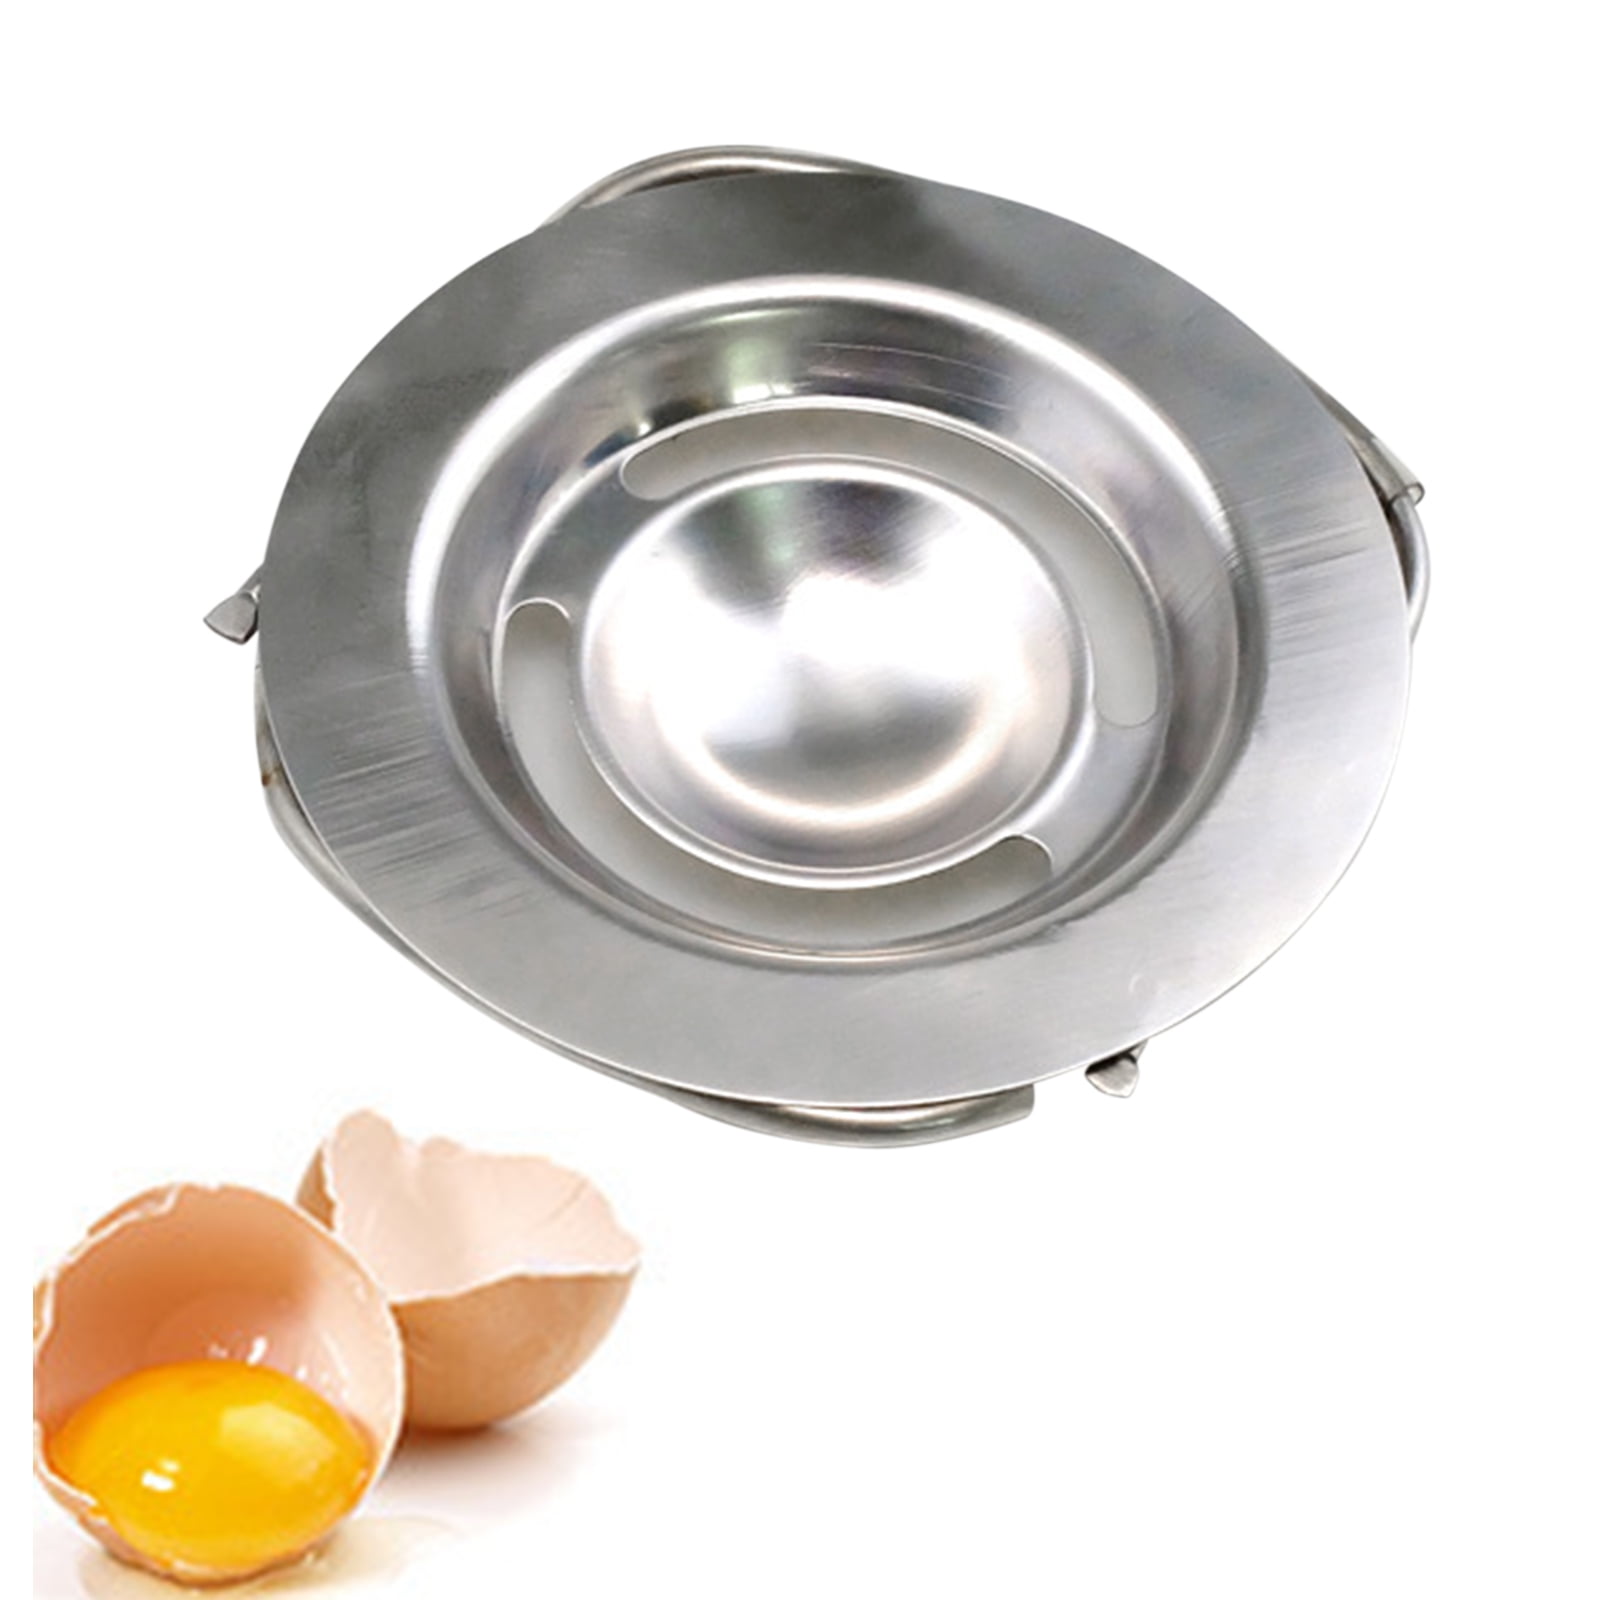 Egg Custards and More 10-inch Egg Beater and 5-inch Egg White Separator Tool for Baking Cake Egg Whisk and Stainless Steel Egg Yolk Egg White Separator